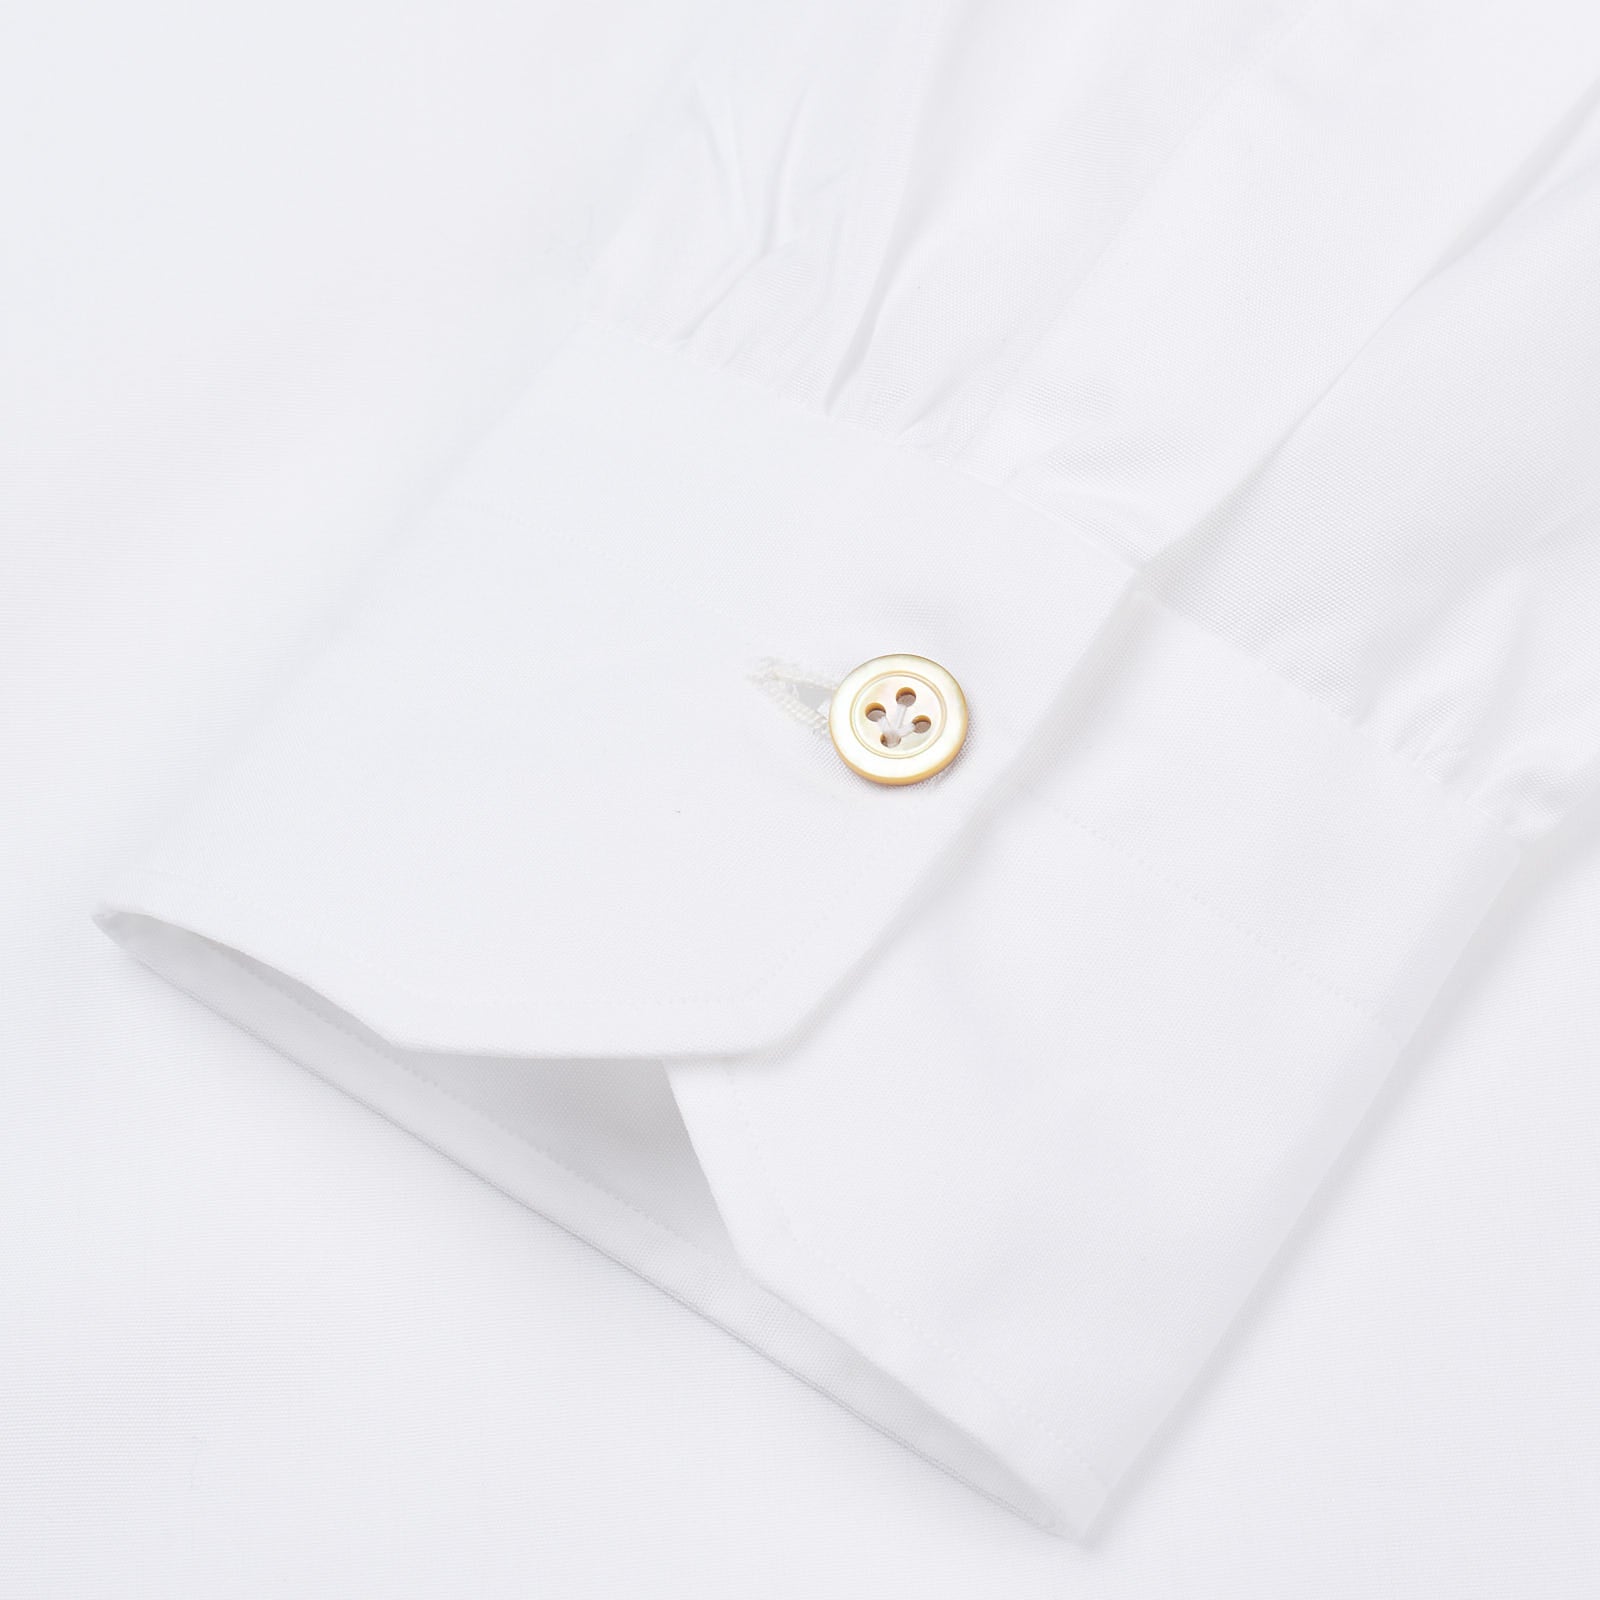 KITON Napoli Handmade Bespoke White Poplin Cotton Button-Down Shirt 39 NEW US 15.5 KITON